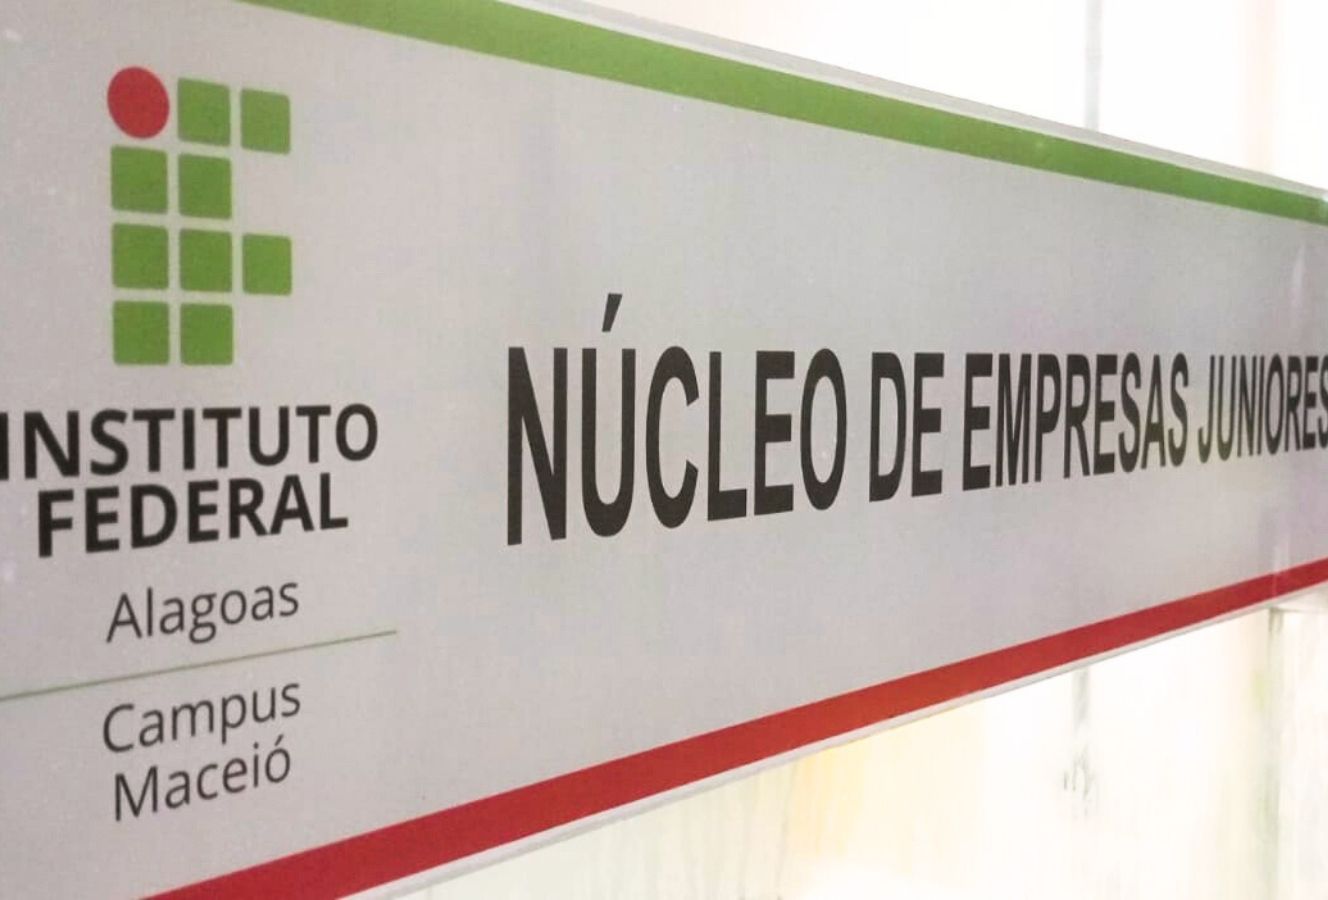 Núcleo de Empresas Júniores foi inaugurado nesta quarta (03/05) no Campus Maceió